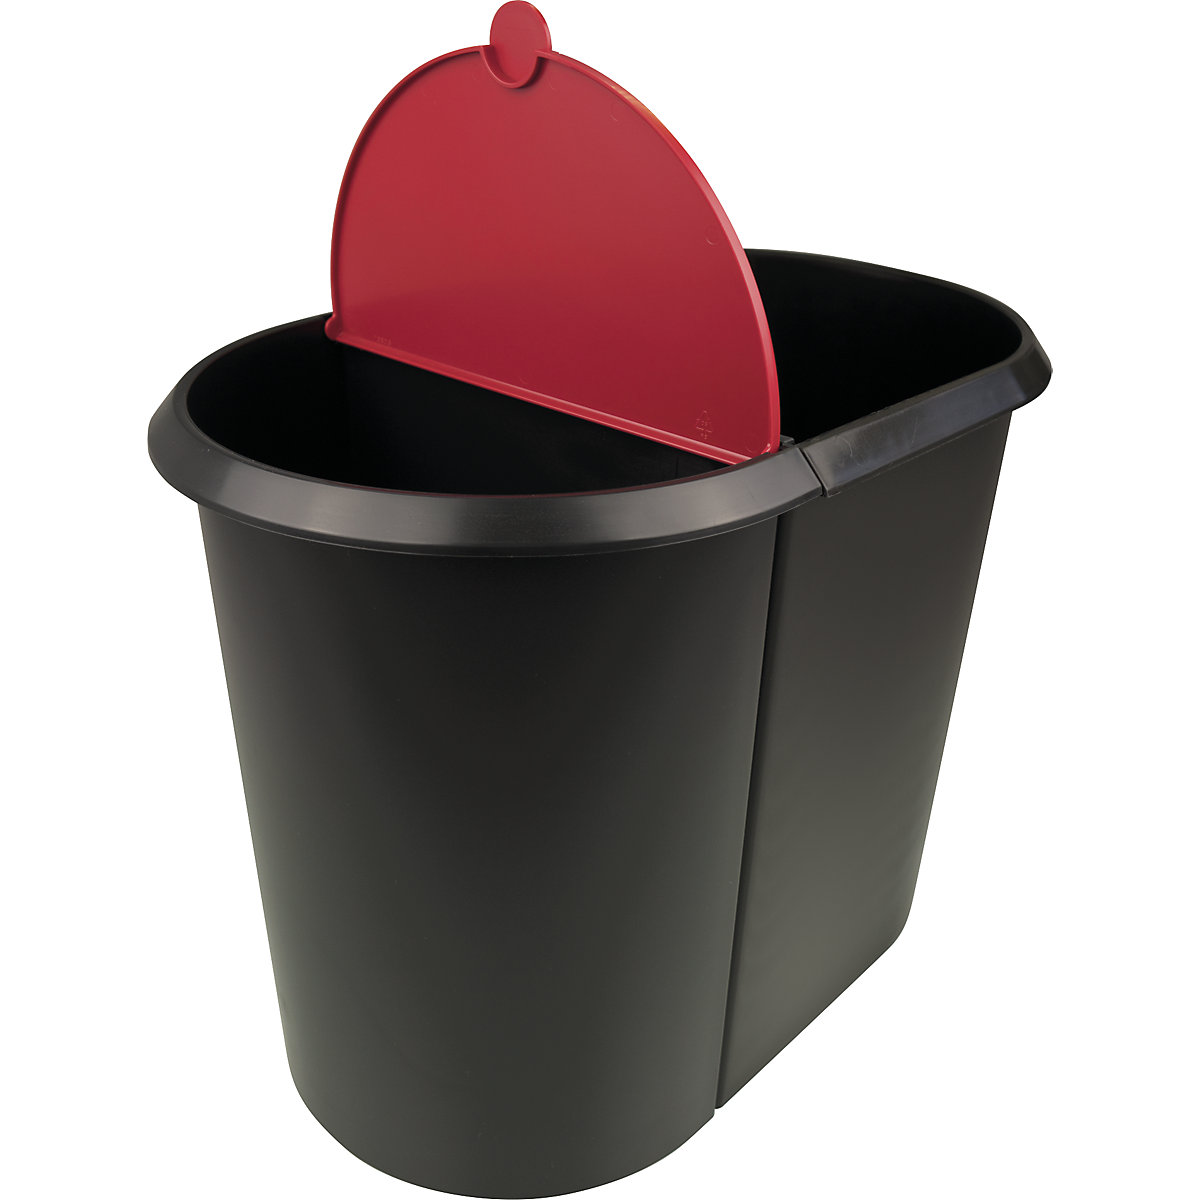 Waste bin system – helit (Product illustration 3)-2